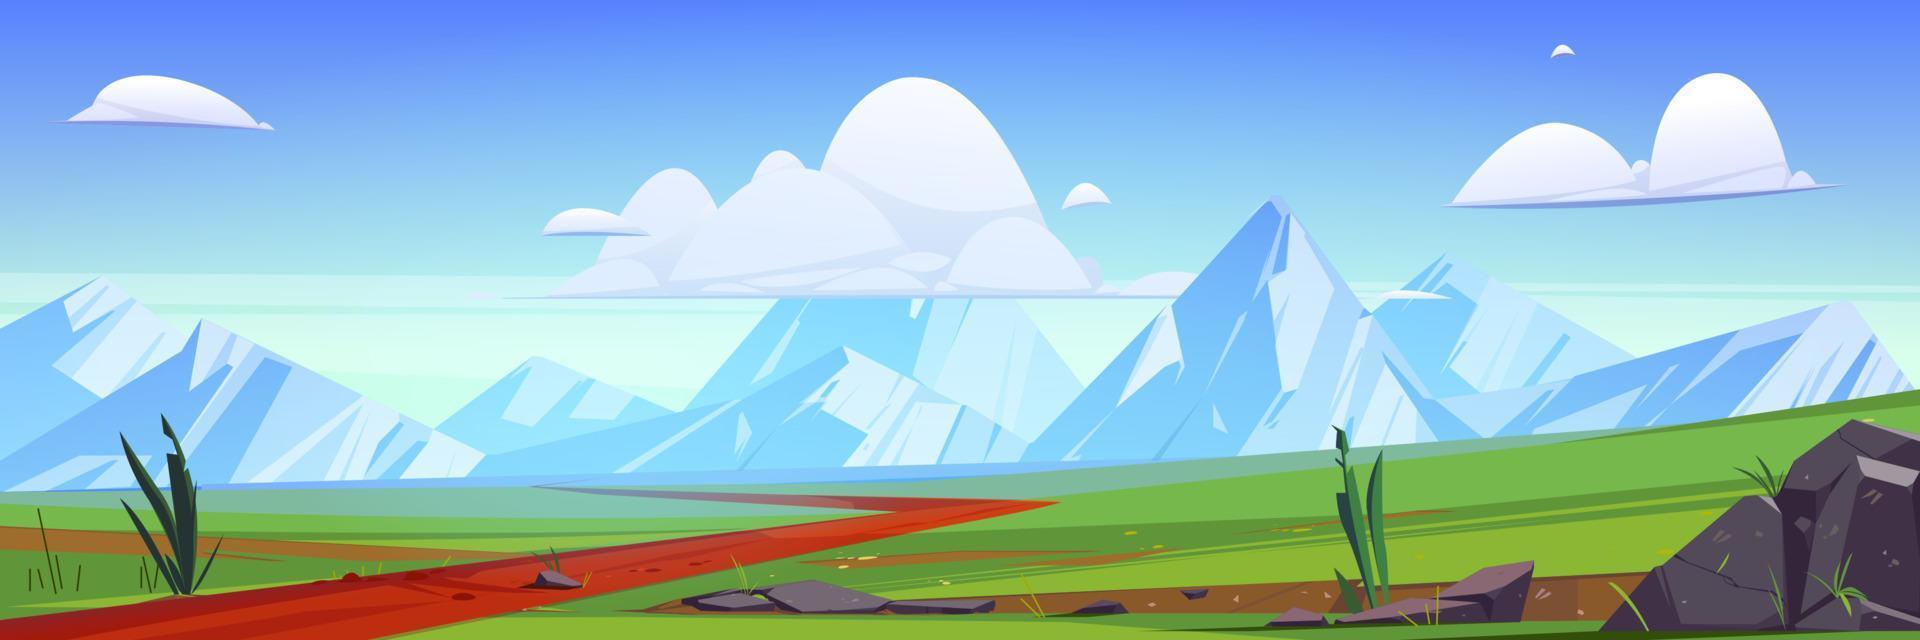 paisaje de montaña de naturaleza de dibujos animados con camino rural vector